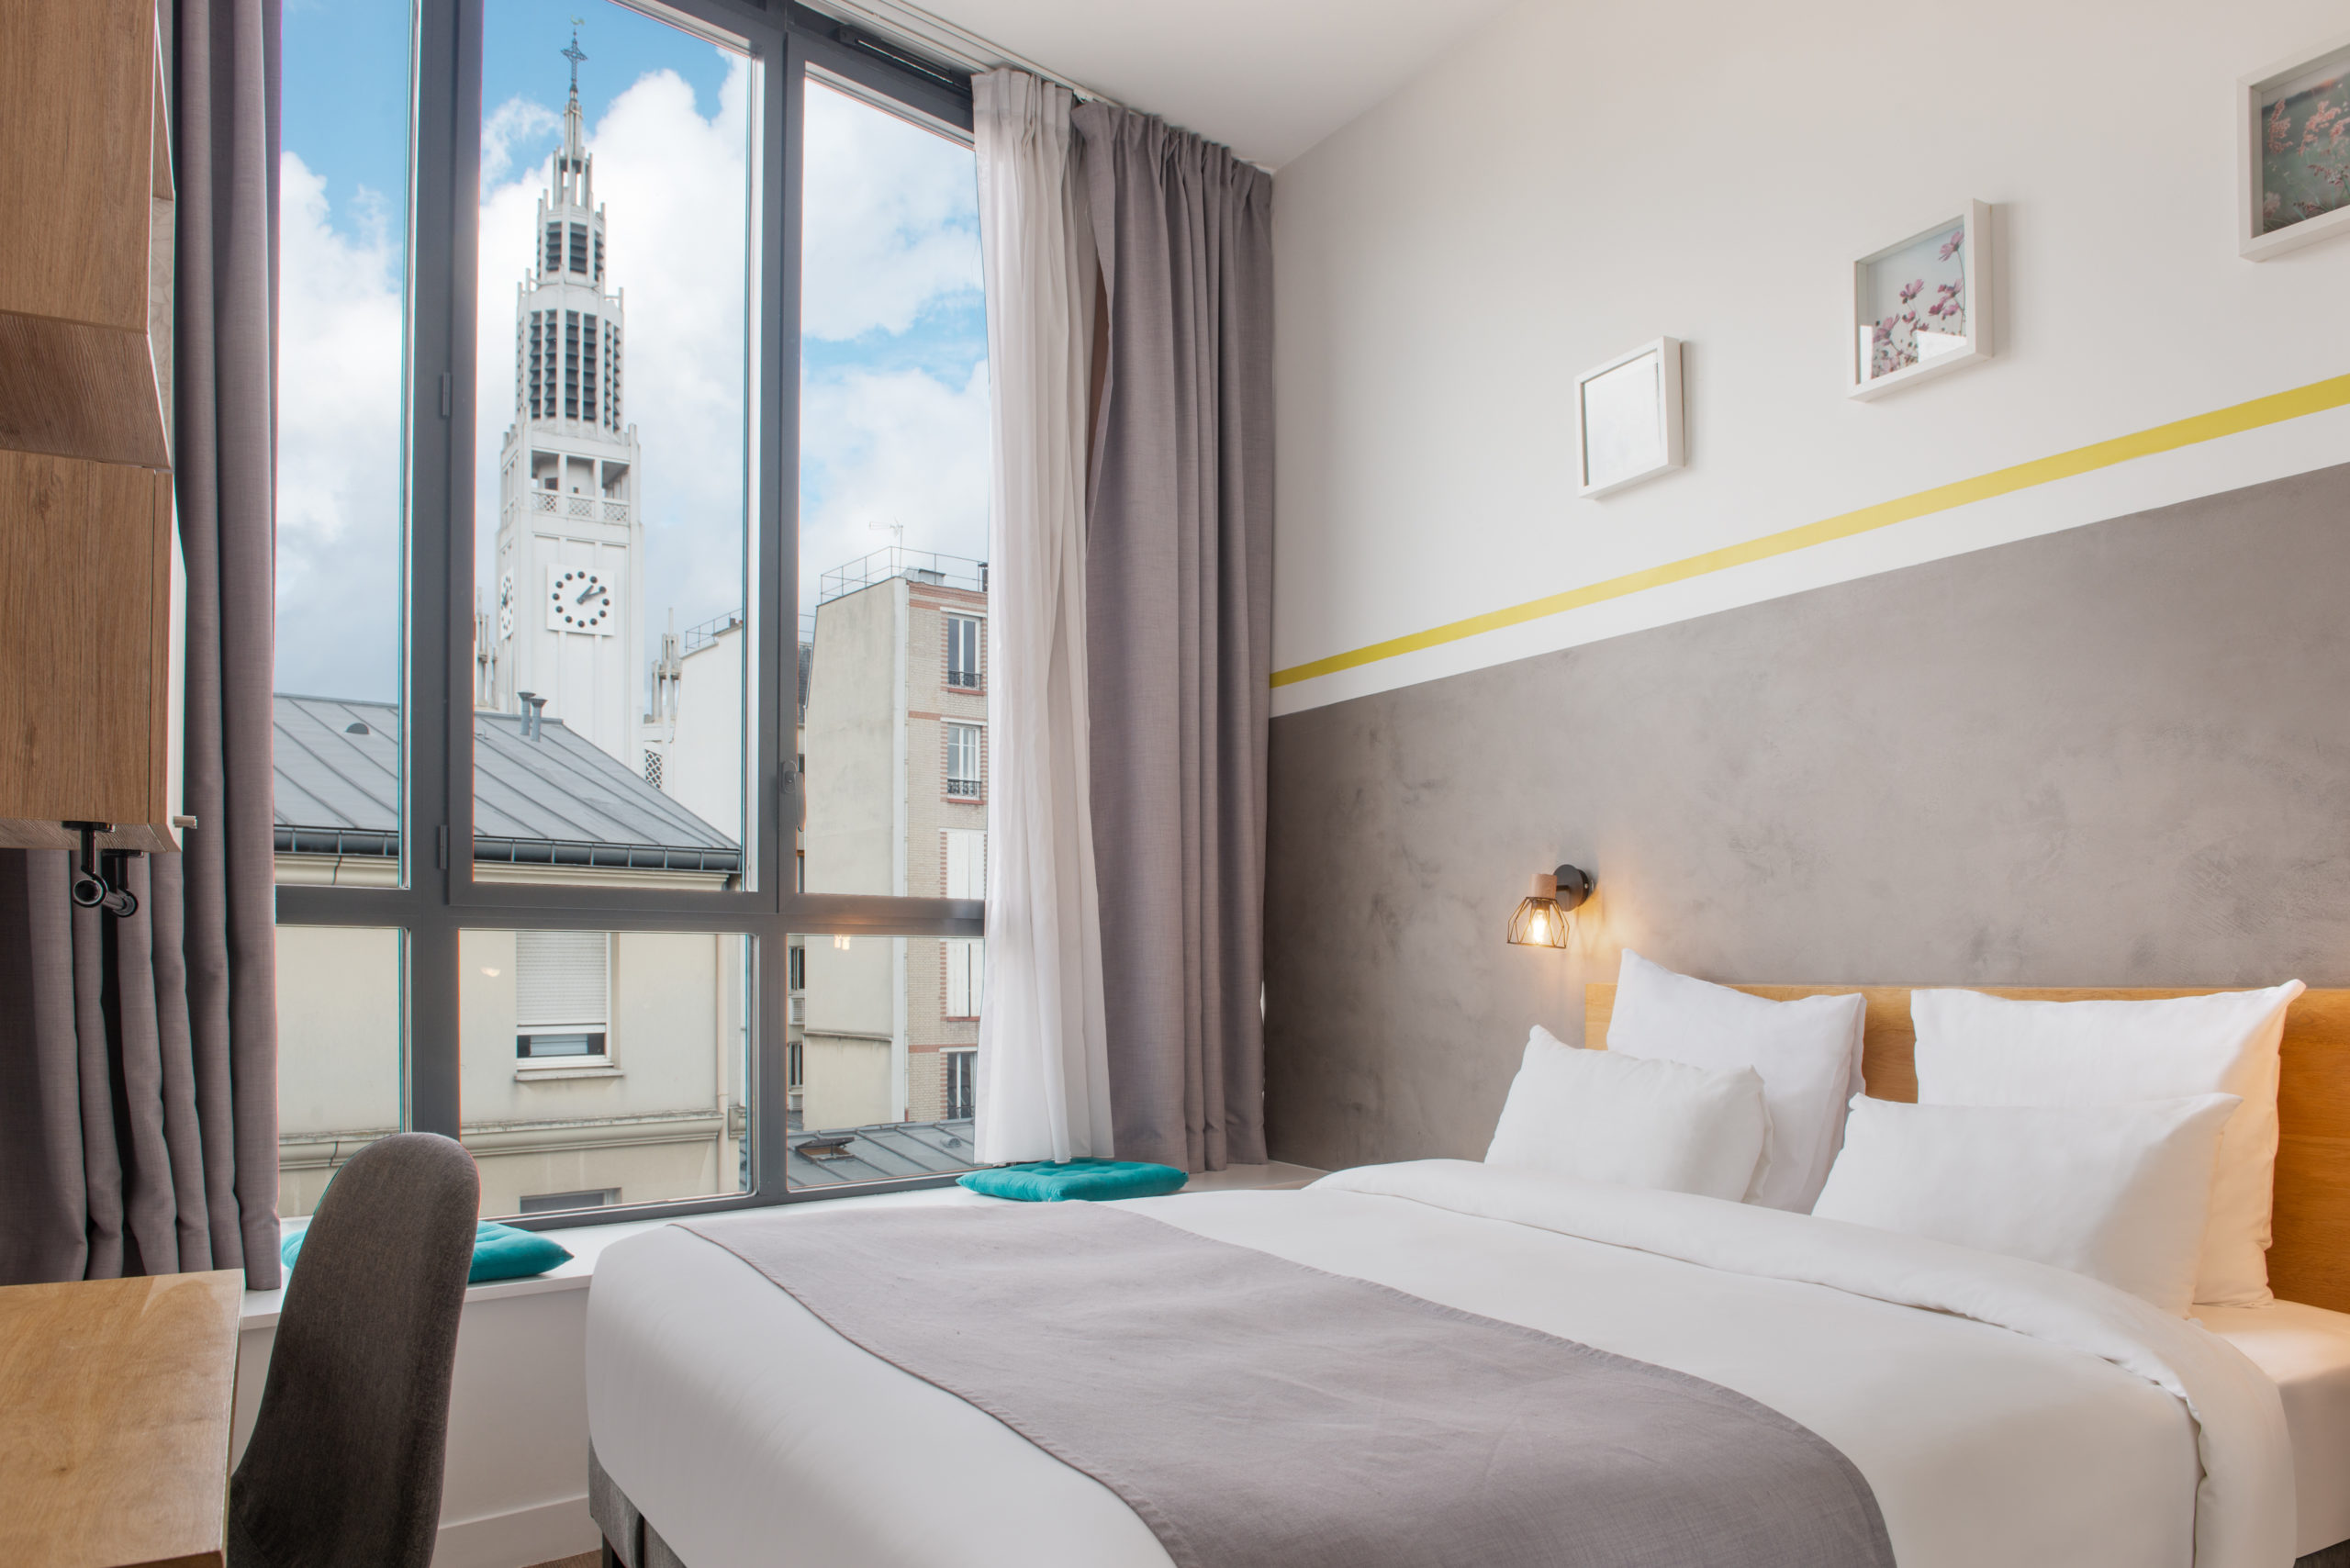 Vue coté rue, chambres conforts et supérieures, dans notre boutique hôtel à Paris, l'hôtel Terre Neuve.